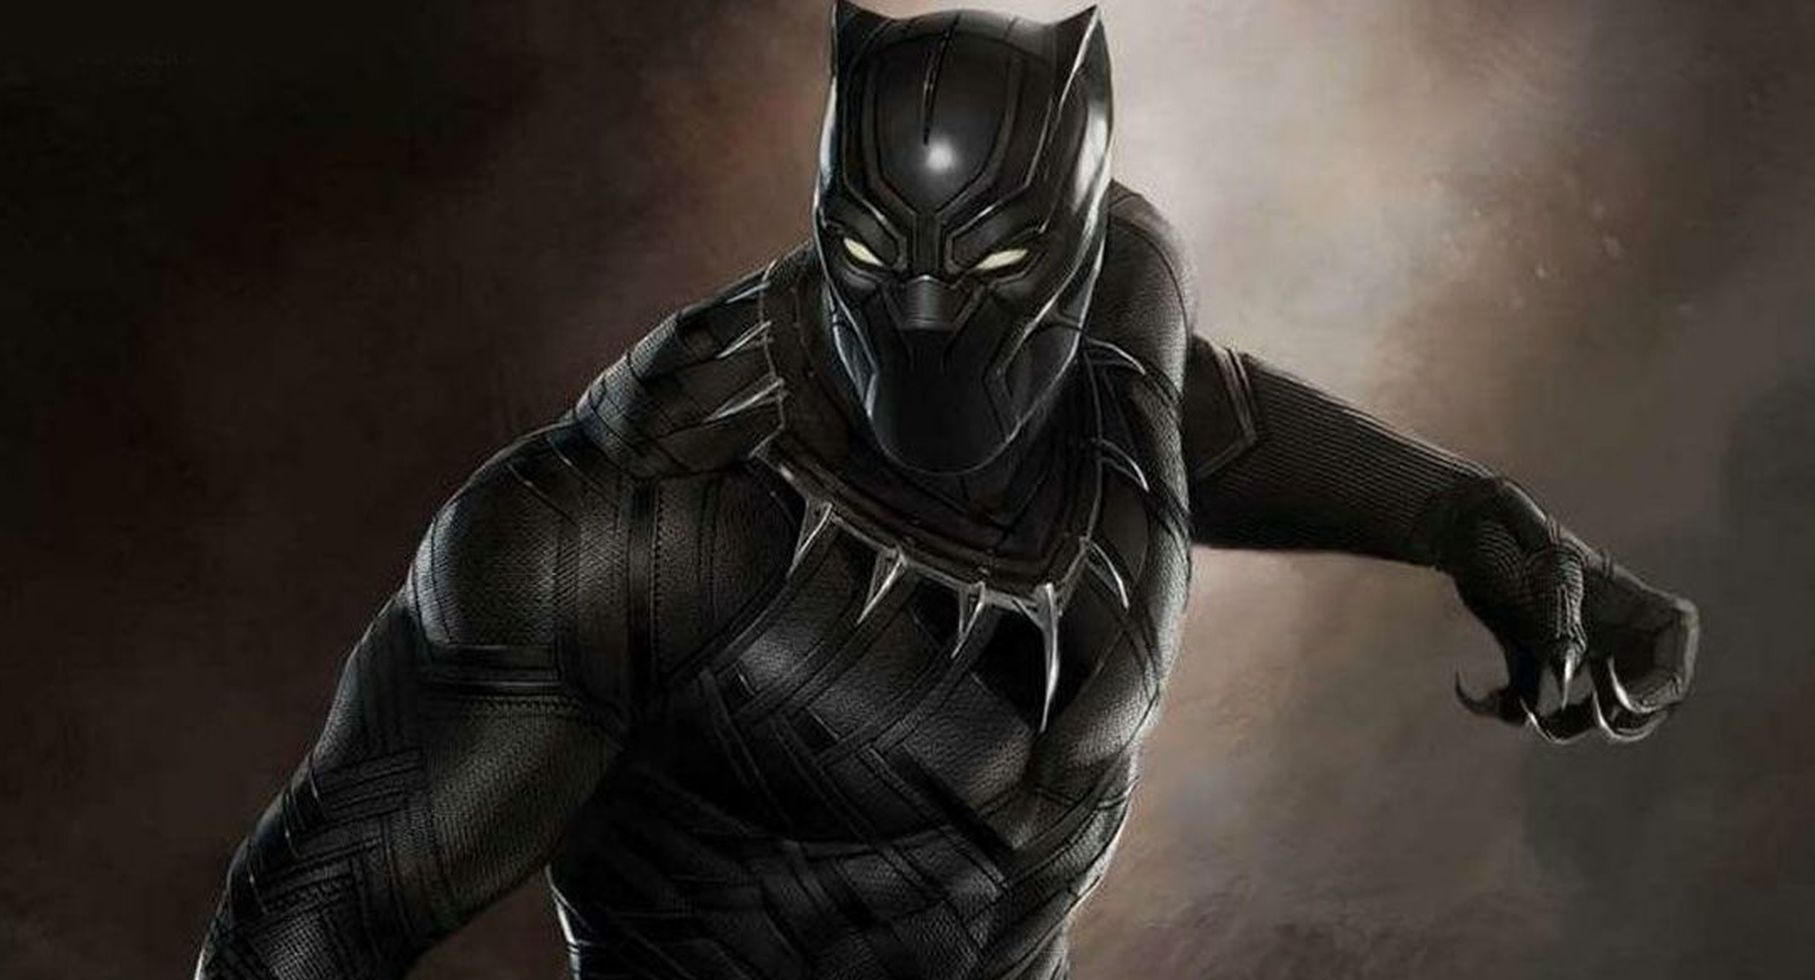 Black Panther arrasa nas bilheteiras com uma abertura de $361M